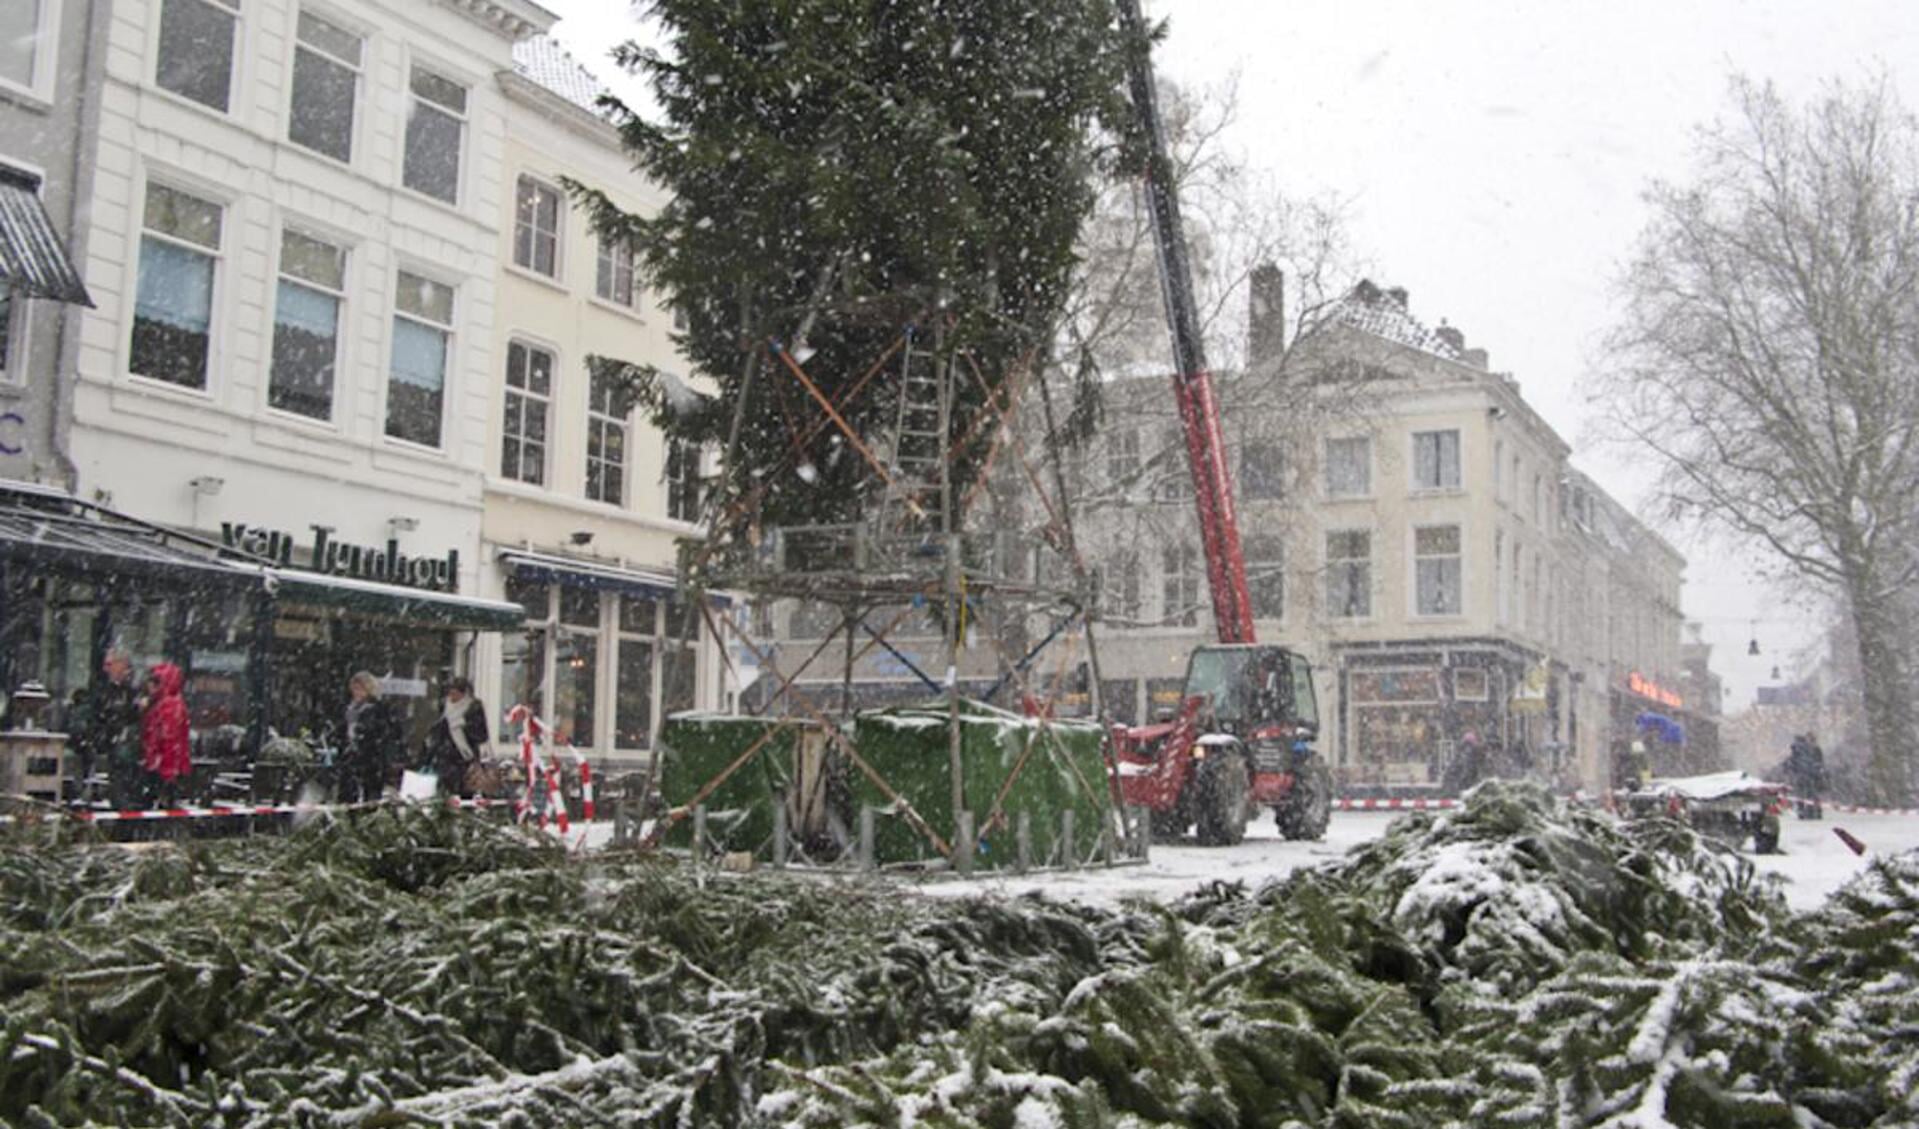 4 december, geheel in winterfsfeer wordt de Kerstboom op de Grote Markt geplaatst. foto Guido van der Kroef